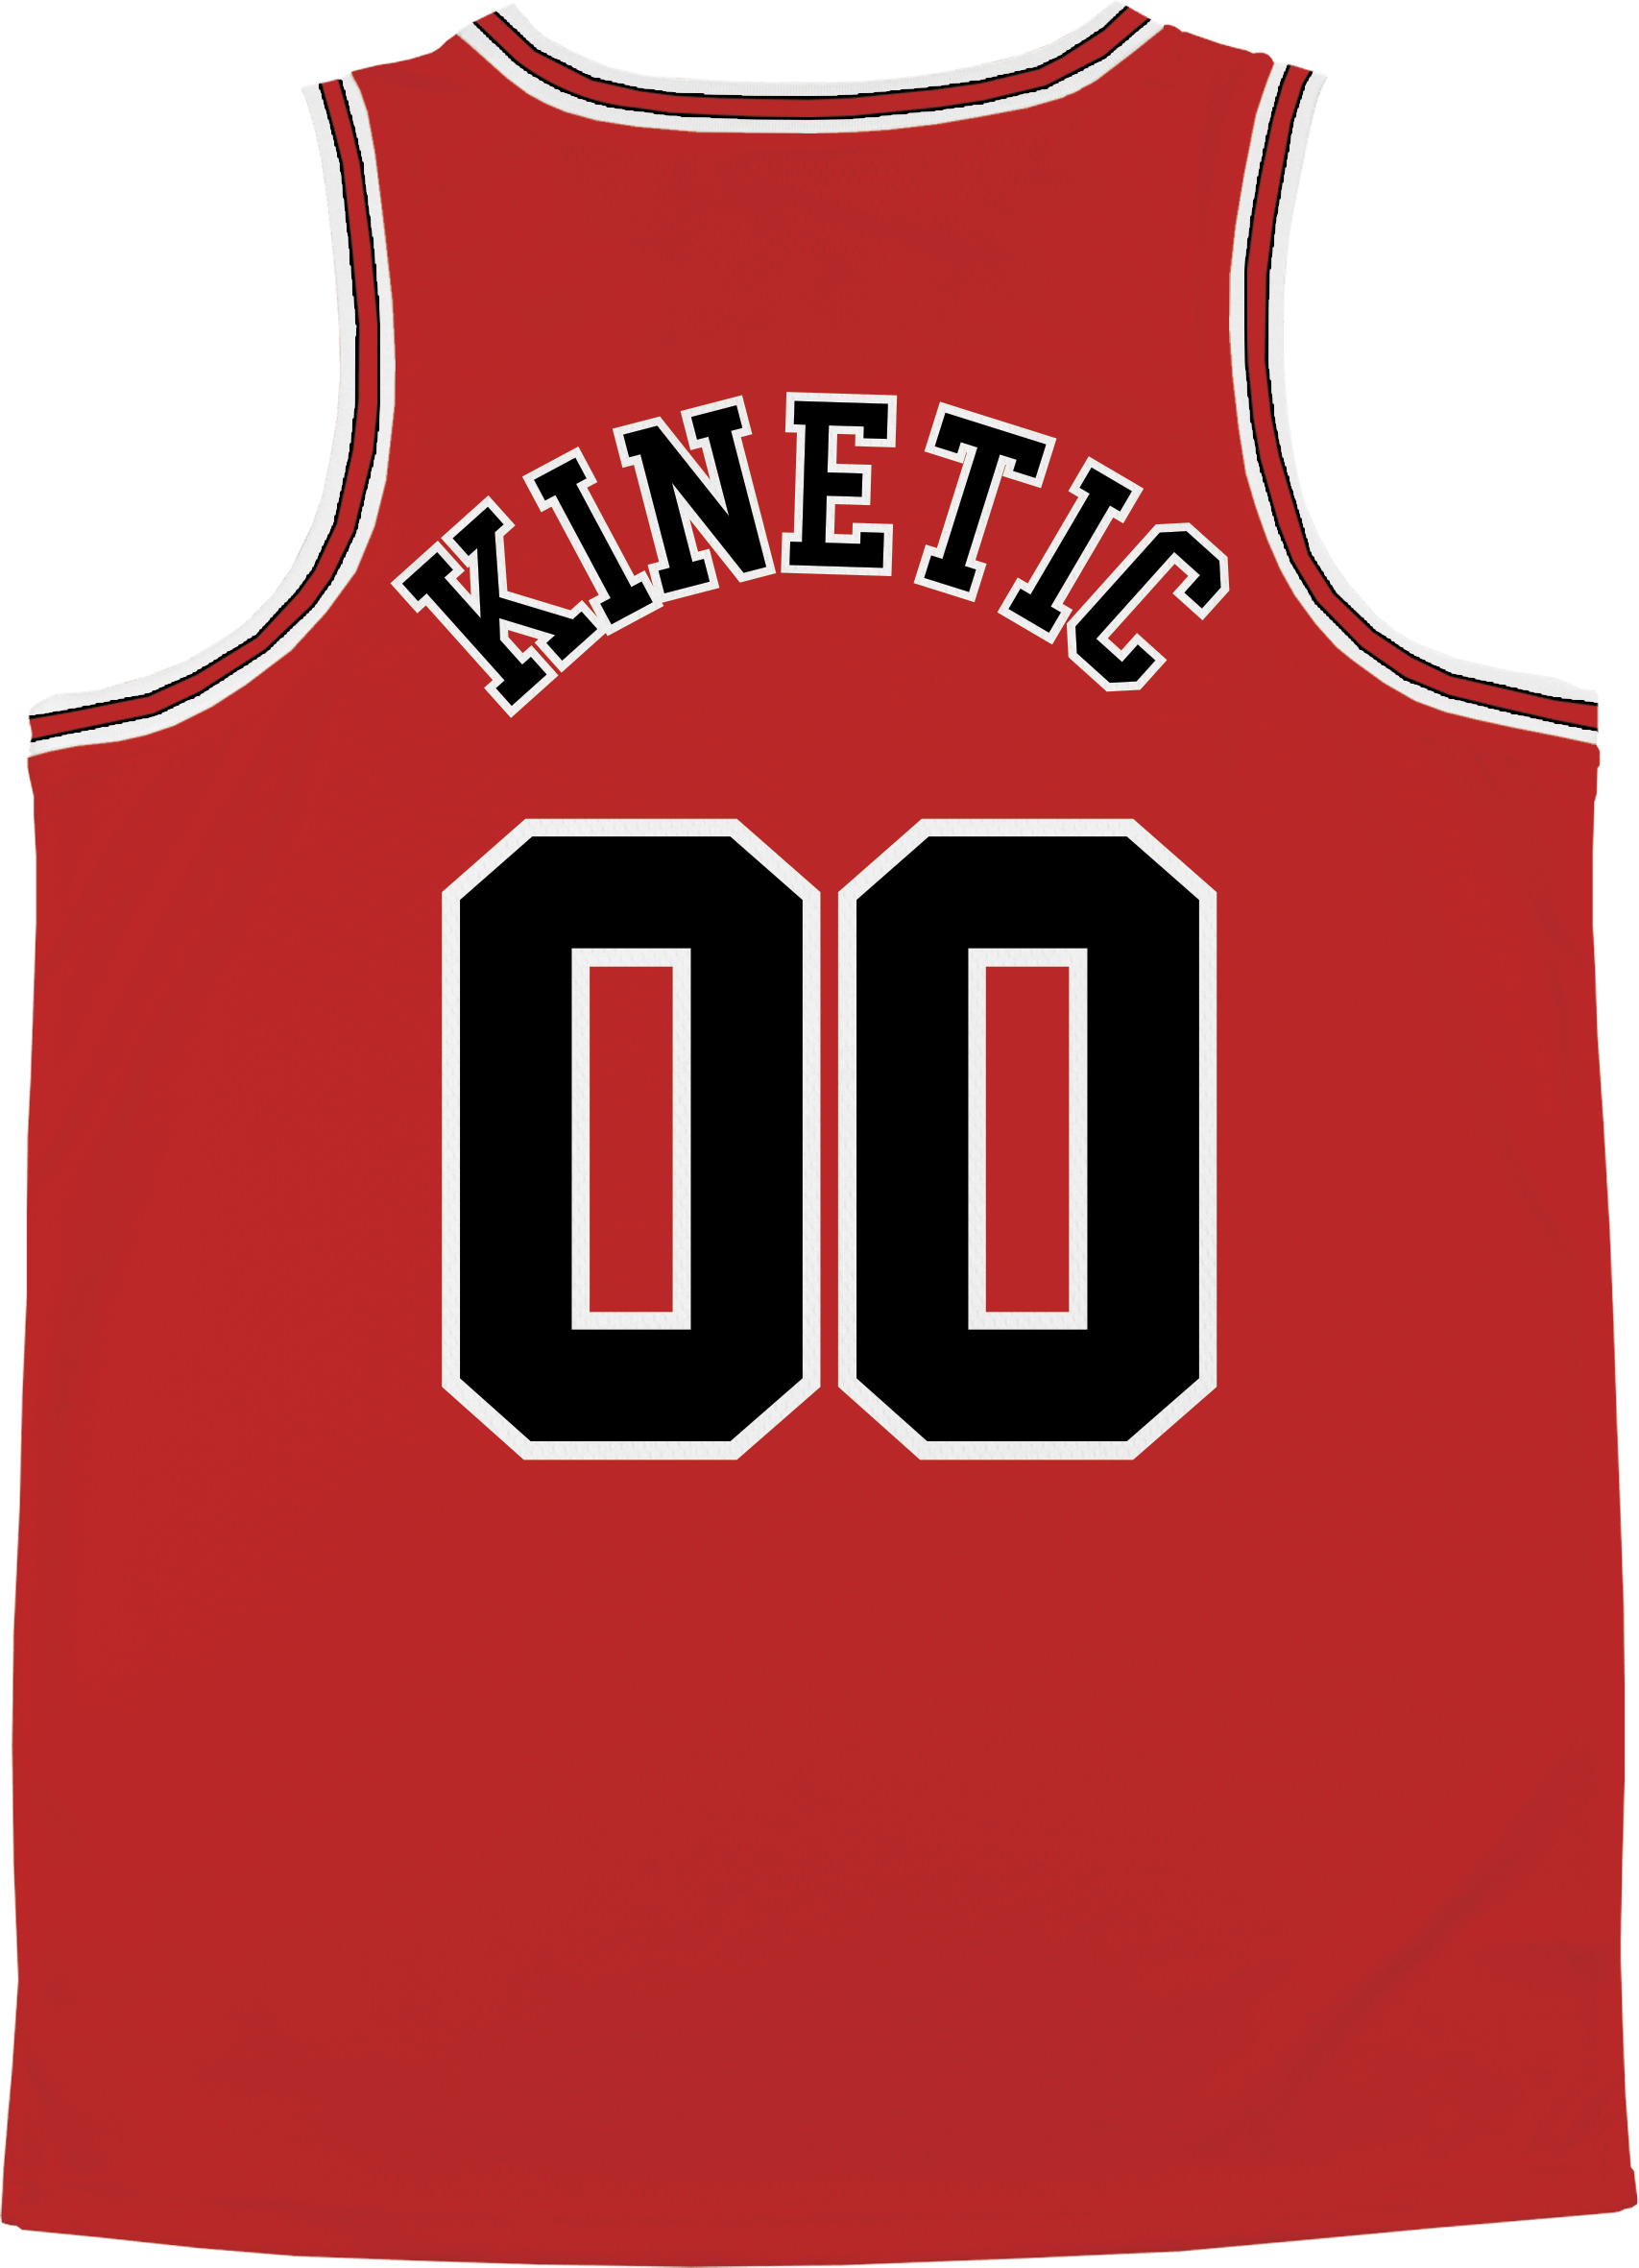 Kinetic ID - Big Red Basketball Jersey Premium Basketball Kinetic Society LLC 